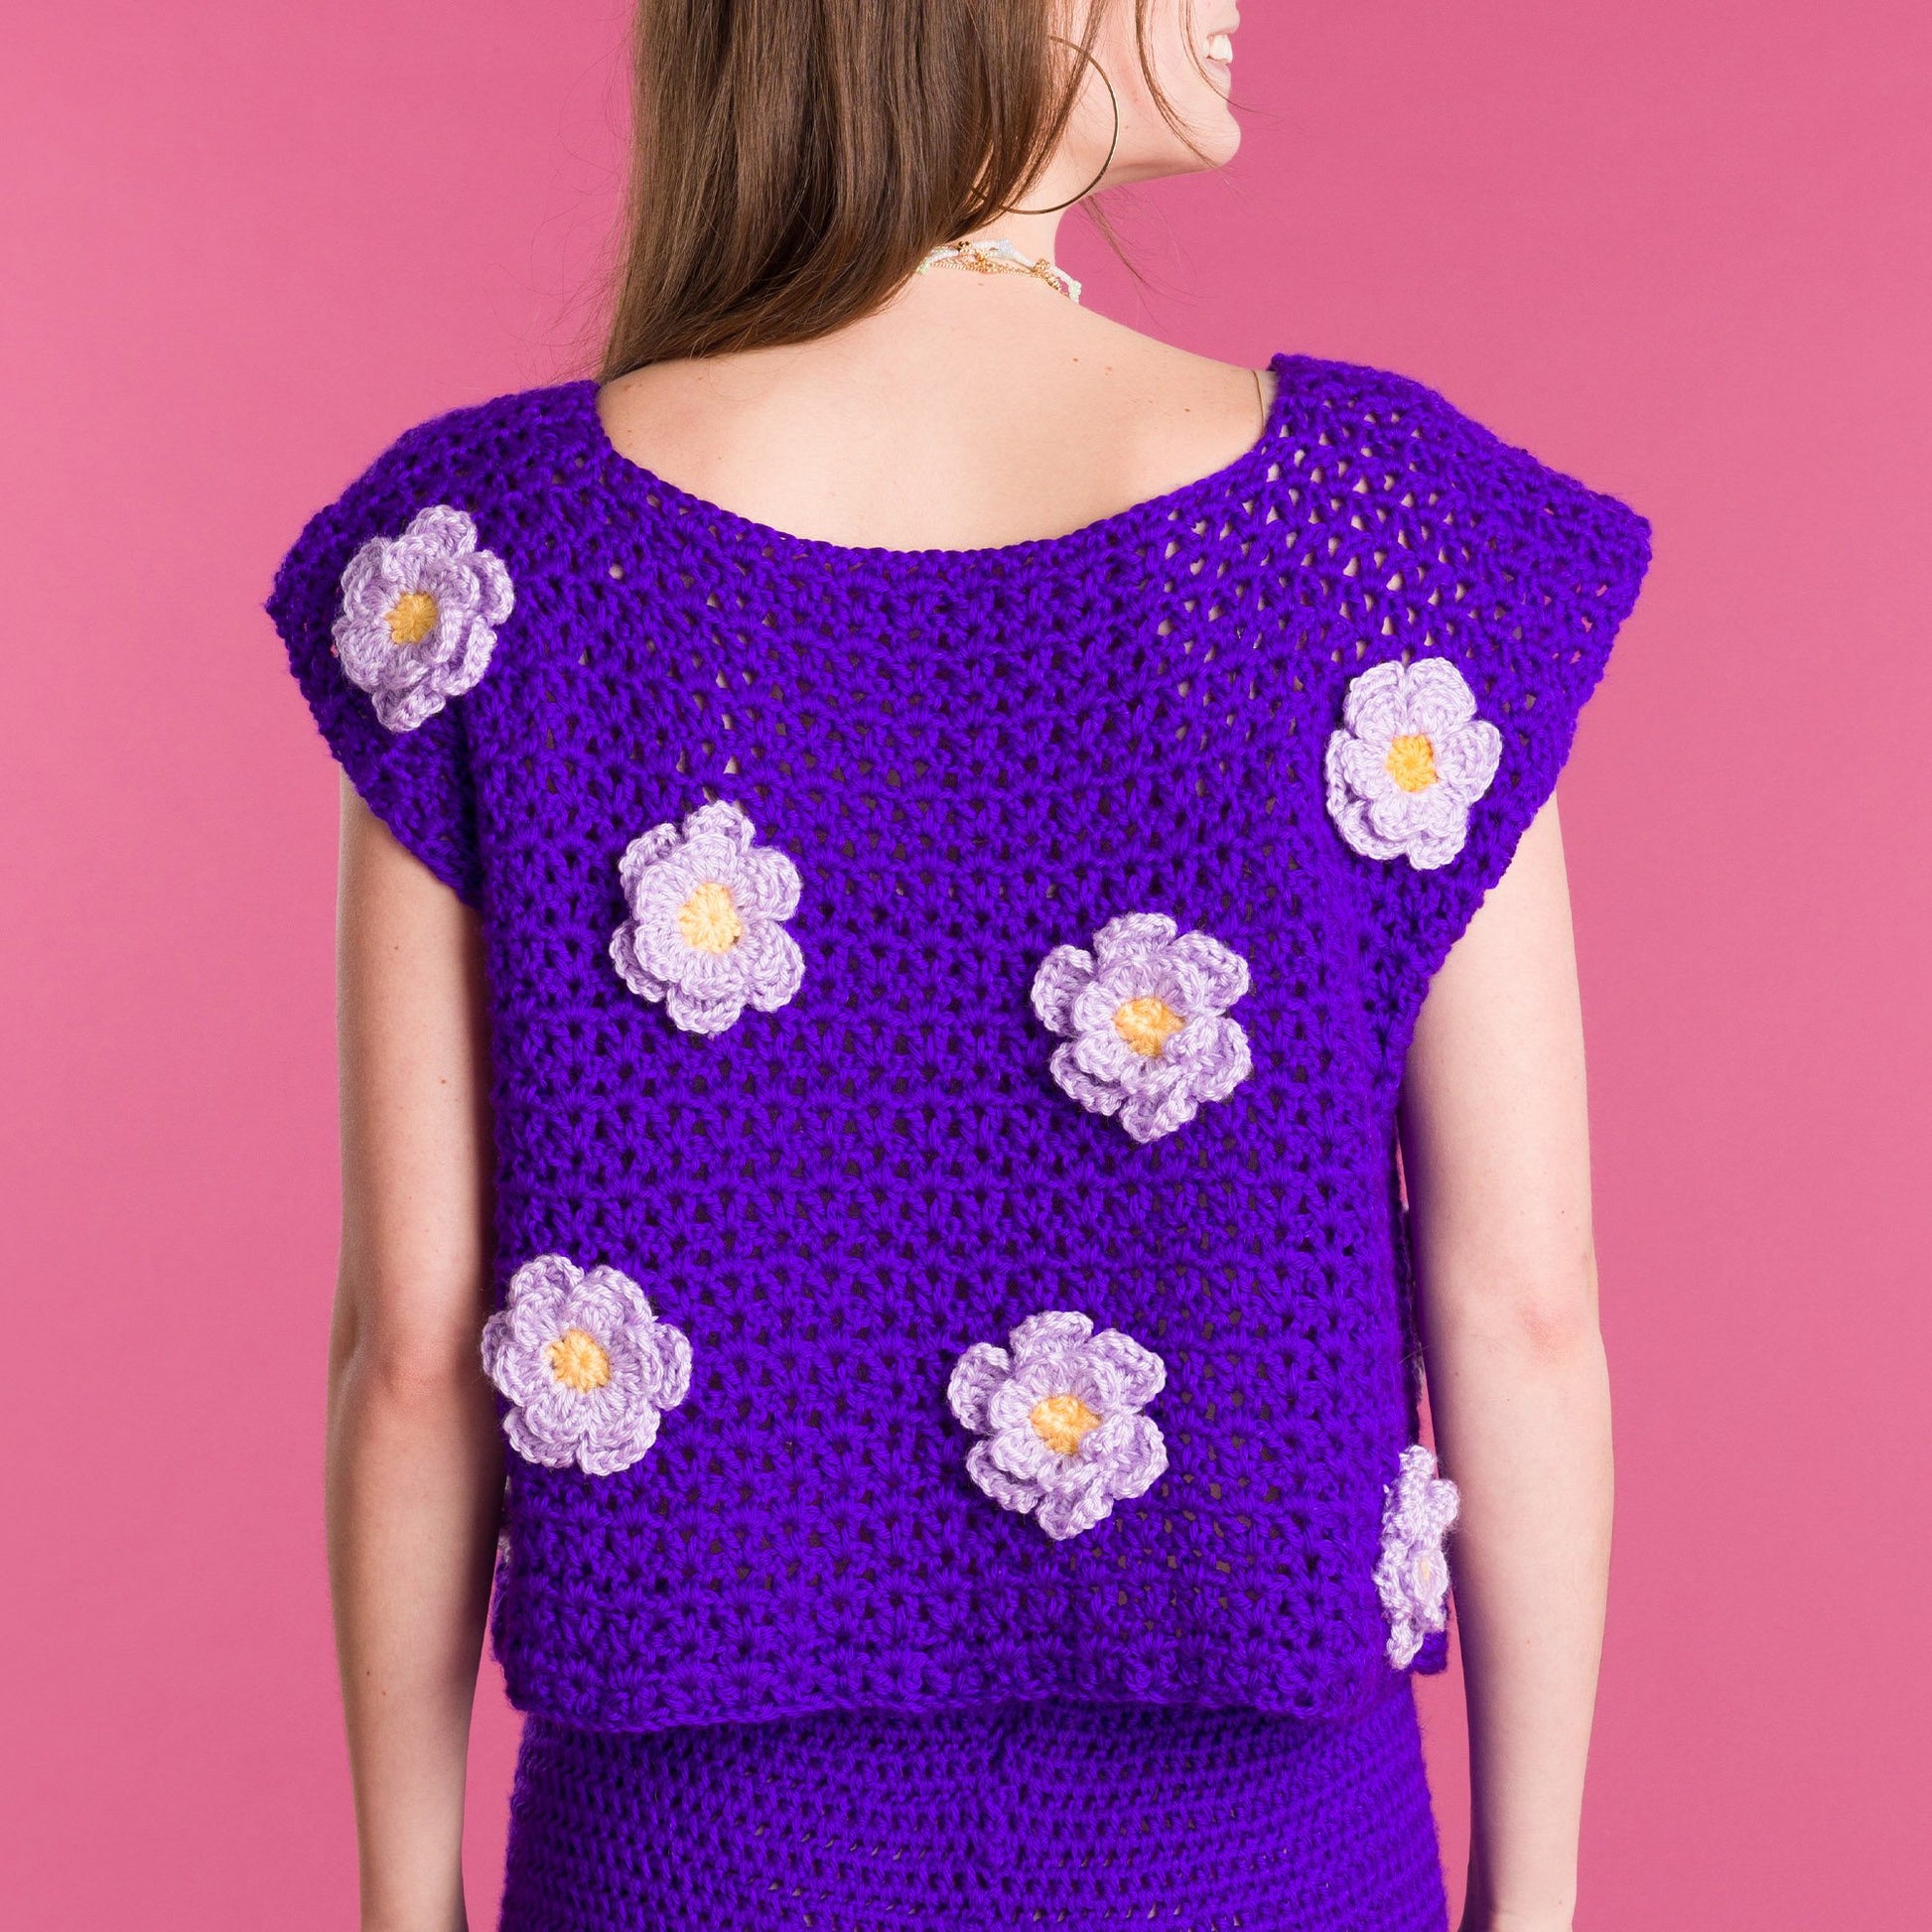 Free Caron In Bloom Crochet Top Pattern